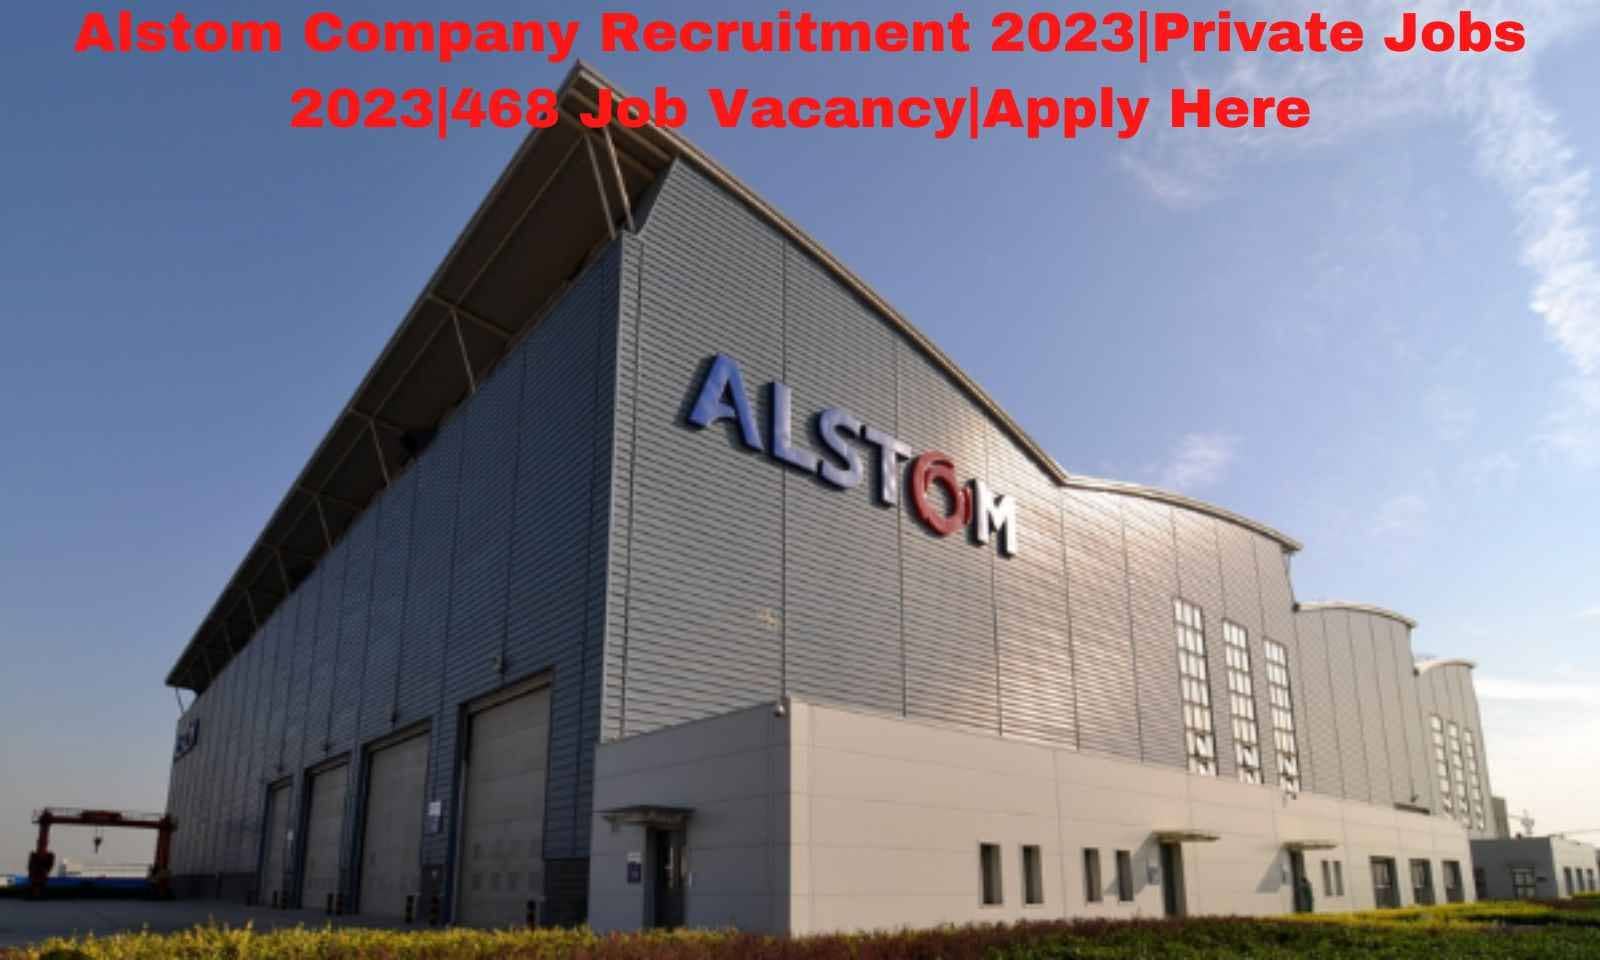 Alstom Company Recruitment 2023